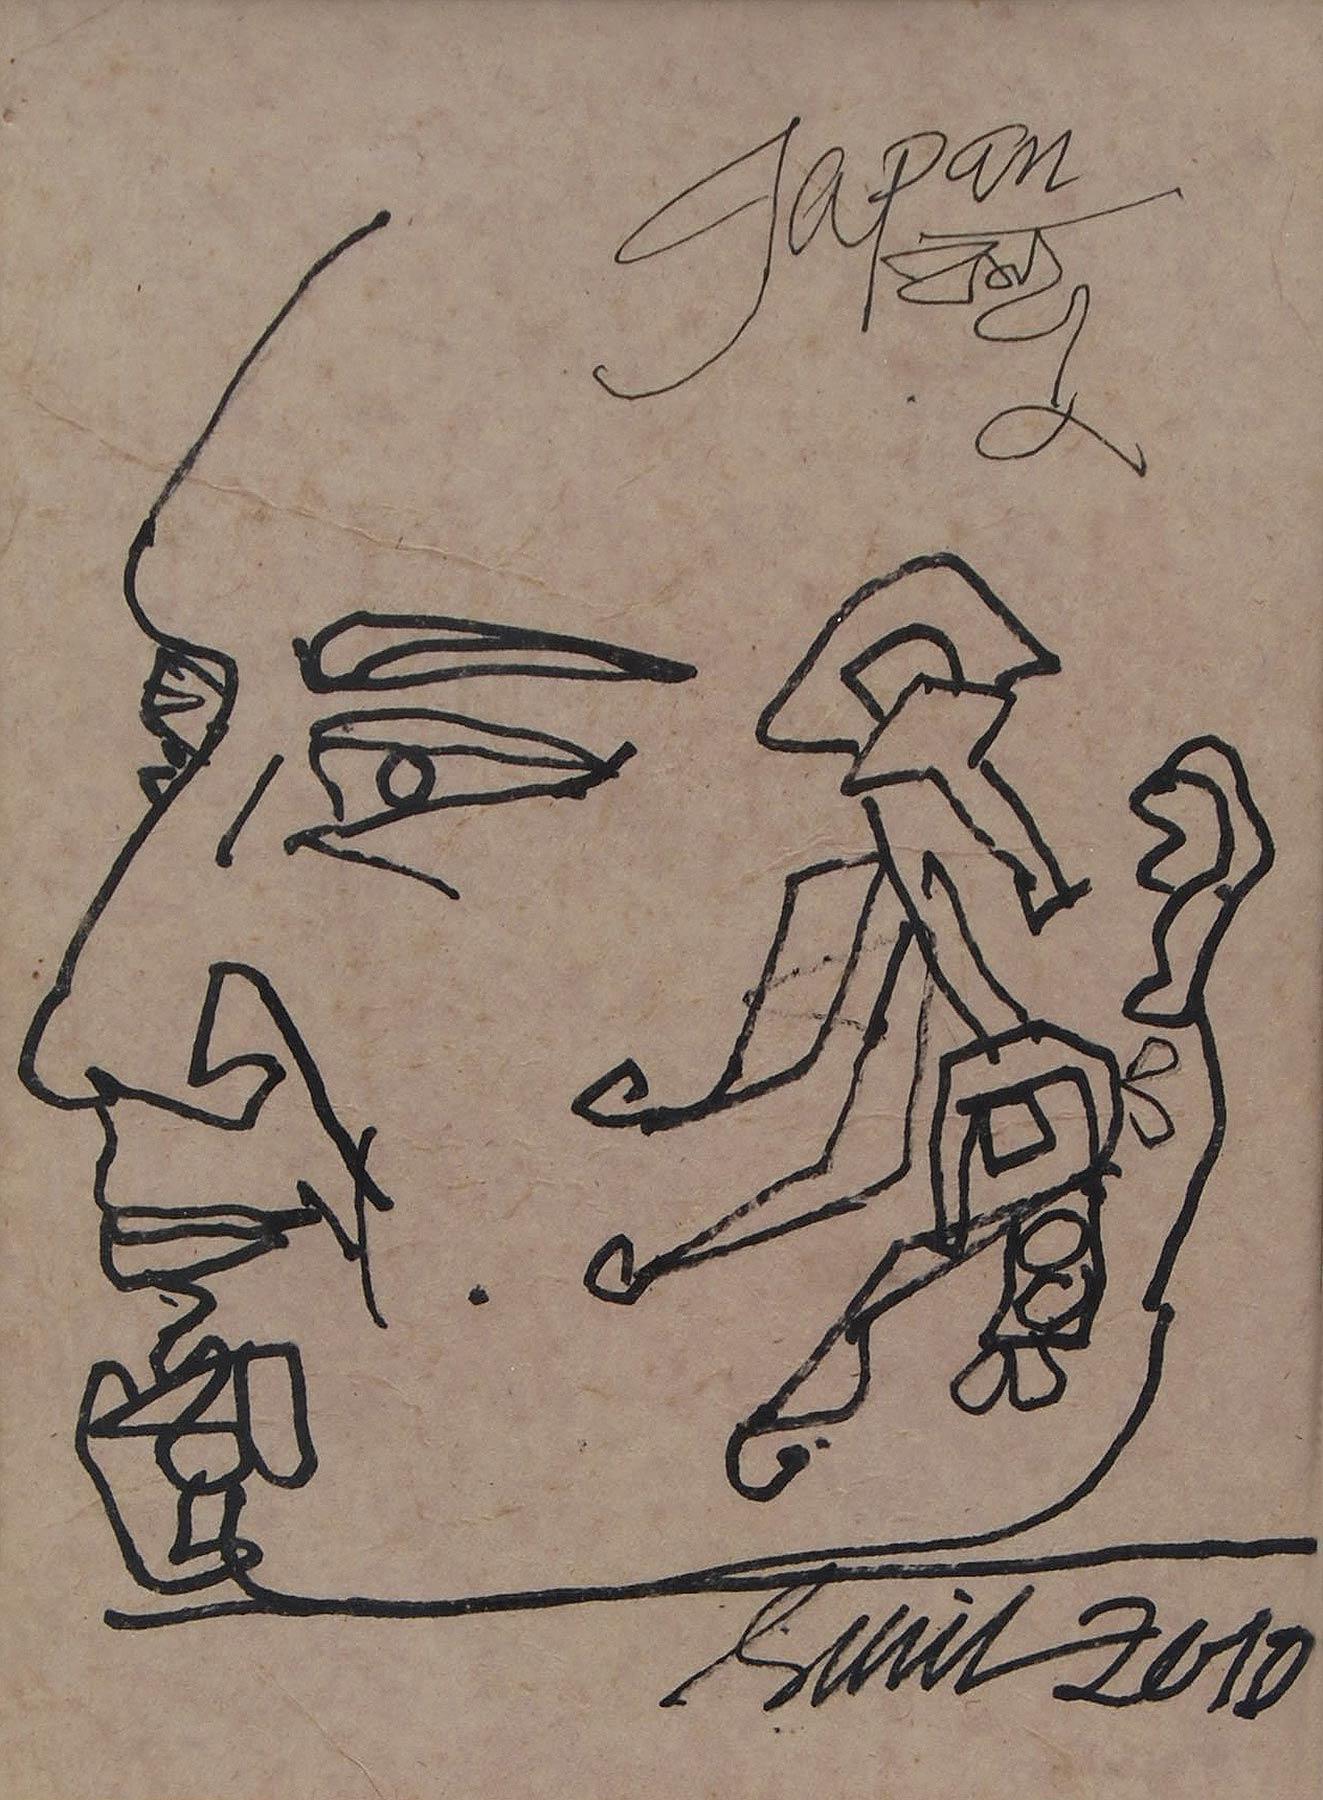 Sunil Das - Ohne Titel - 9 x 7 Zoll & 9,25 x 7 Zoll (ungerahmte Größe)
Feder und Tinte auf Papier, 2012 & 2010 (2er Set)
Inklusive Versand in hängefertiger Form.

Eine Ausnahme bilden die Gesichter wie die Profile bärtiger Männer, bei denen der